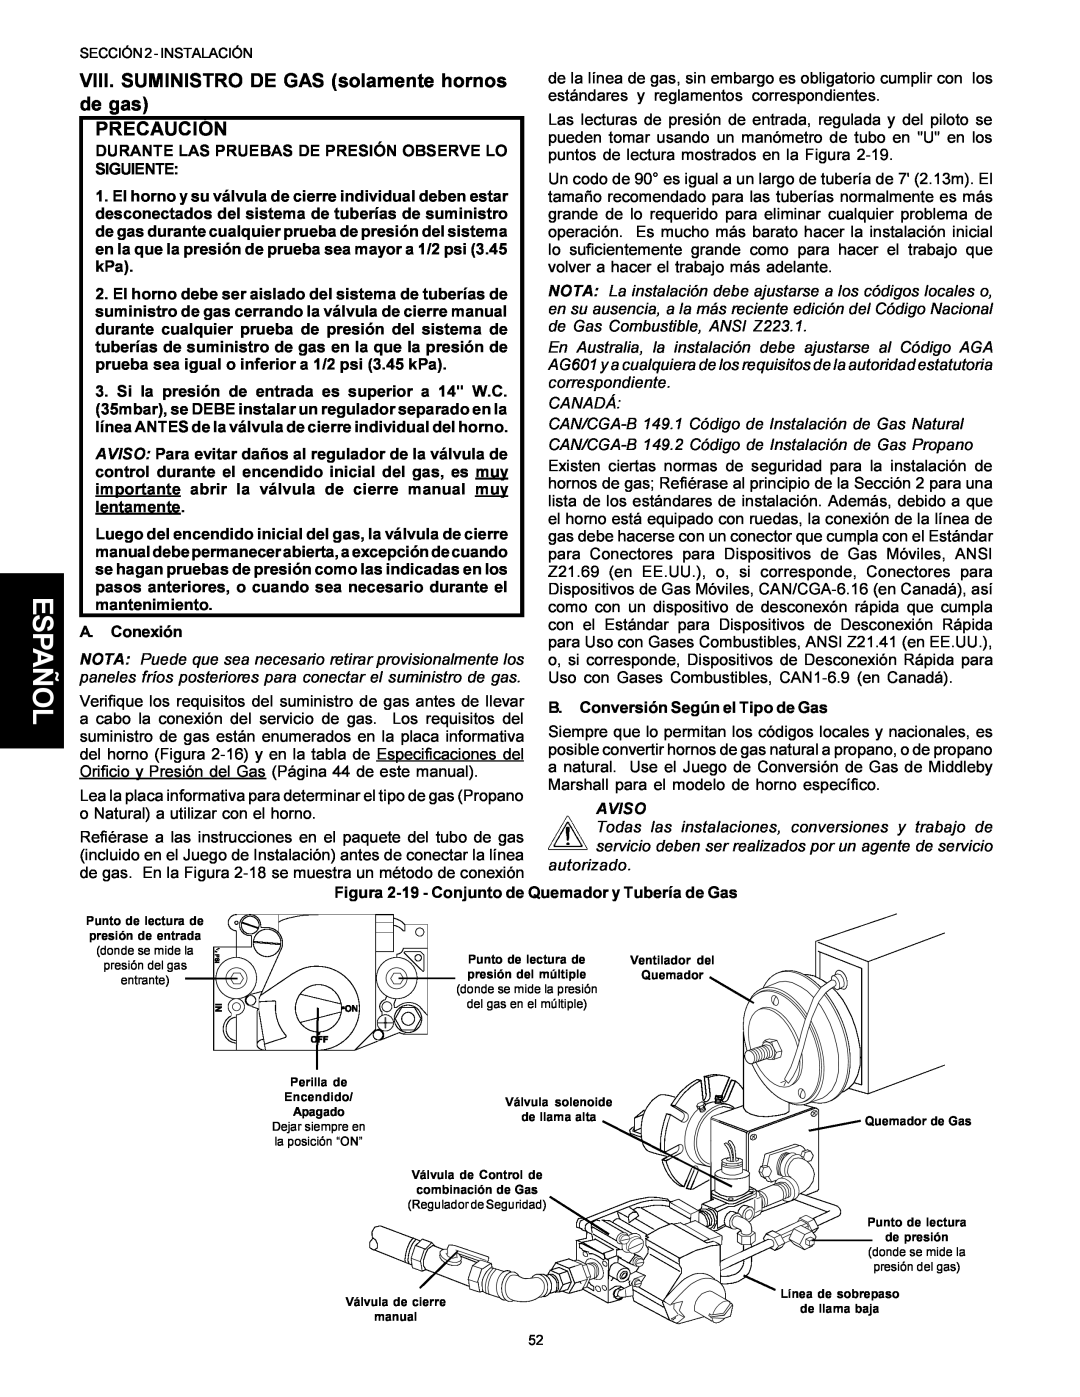 Middleby Marshall PS314SBI installation manual Español, VIII. SUMINISTRO DE GAS solamente hornos de gas, Precaución, Aviso 